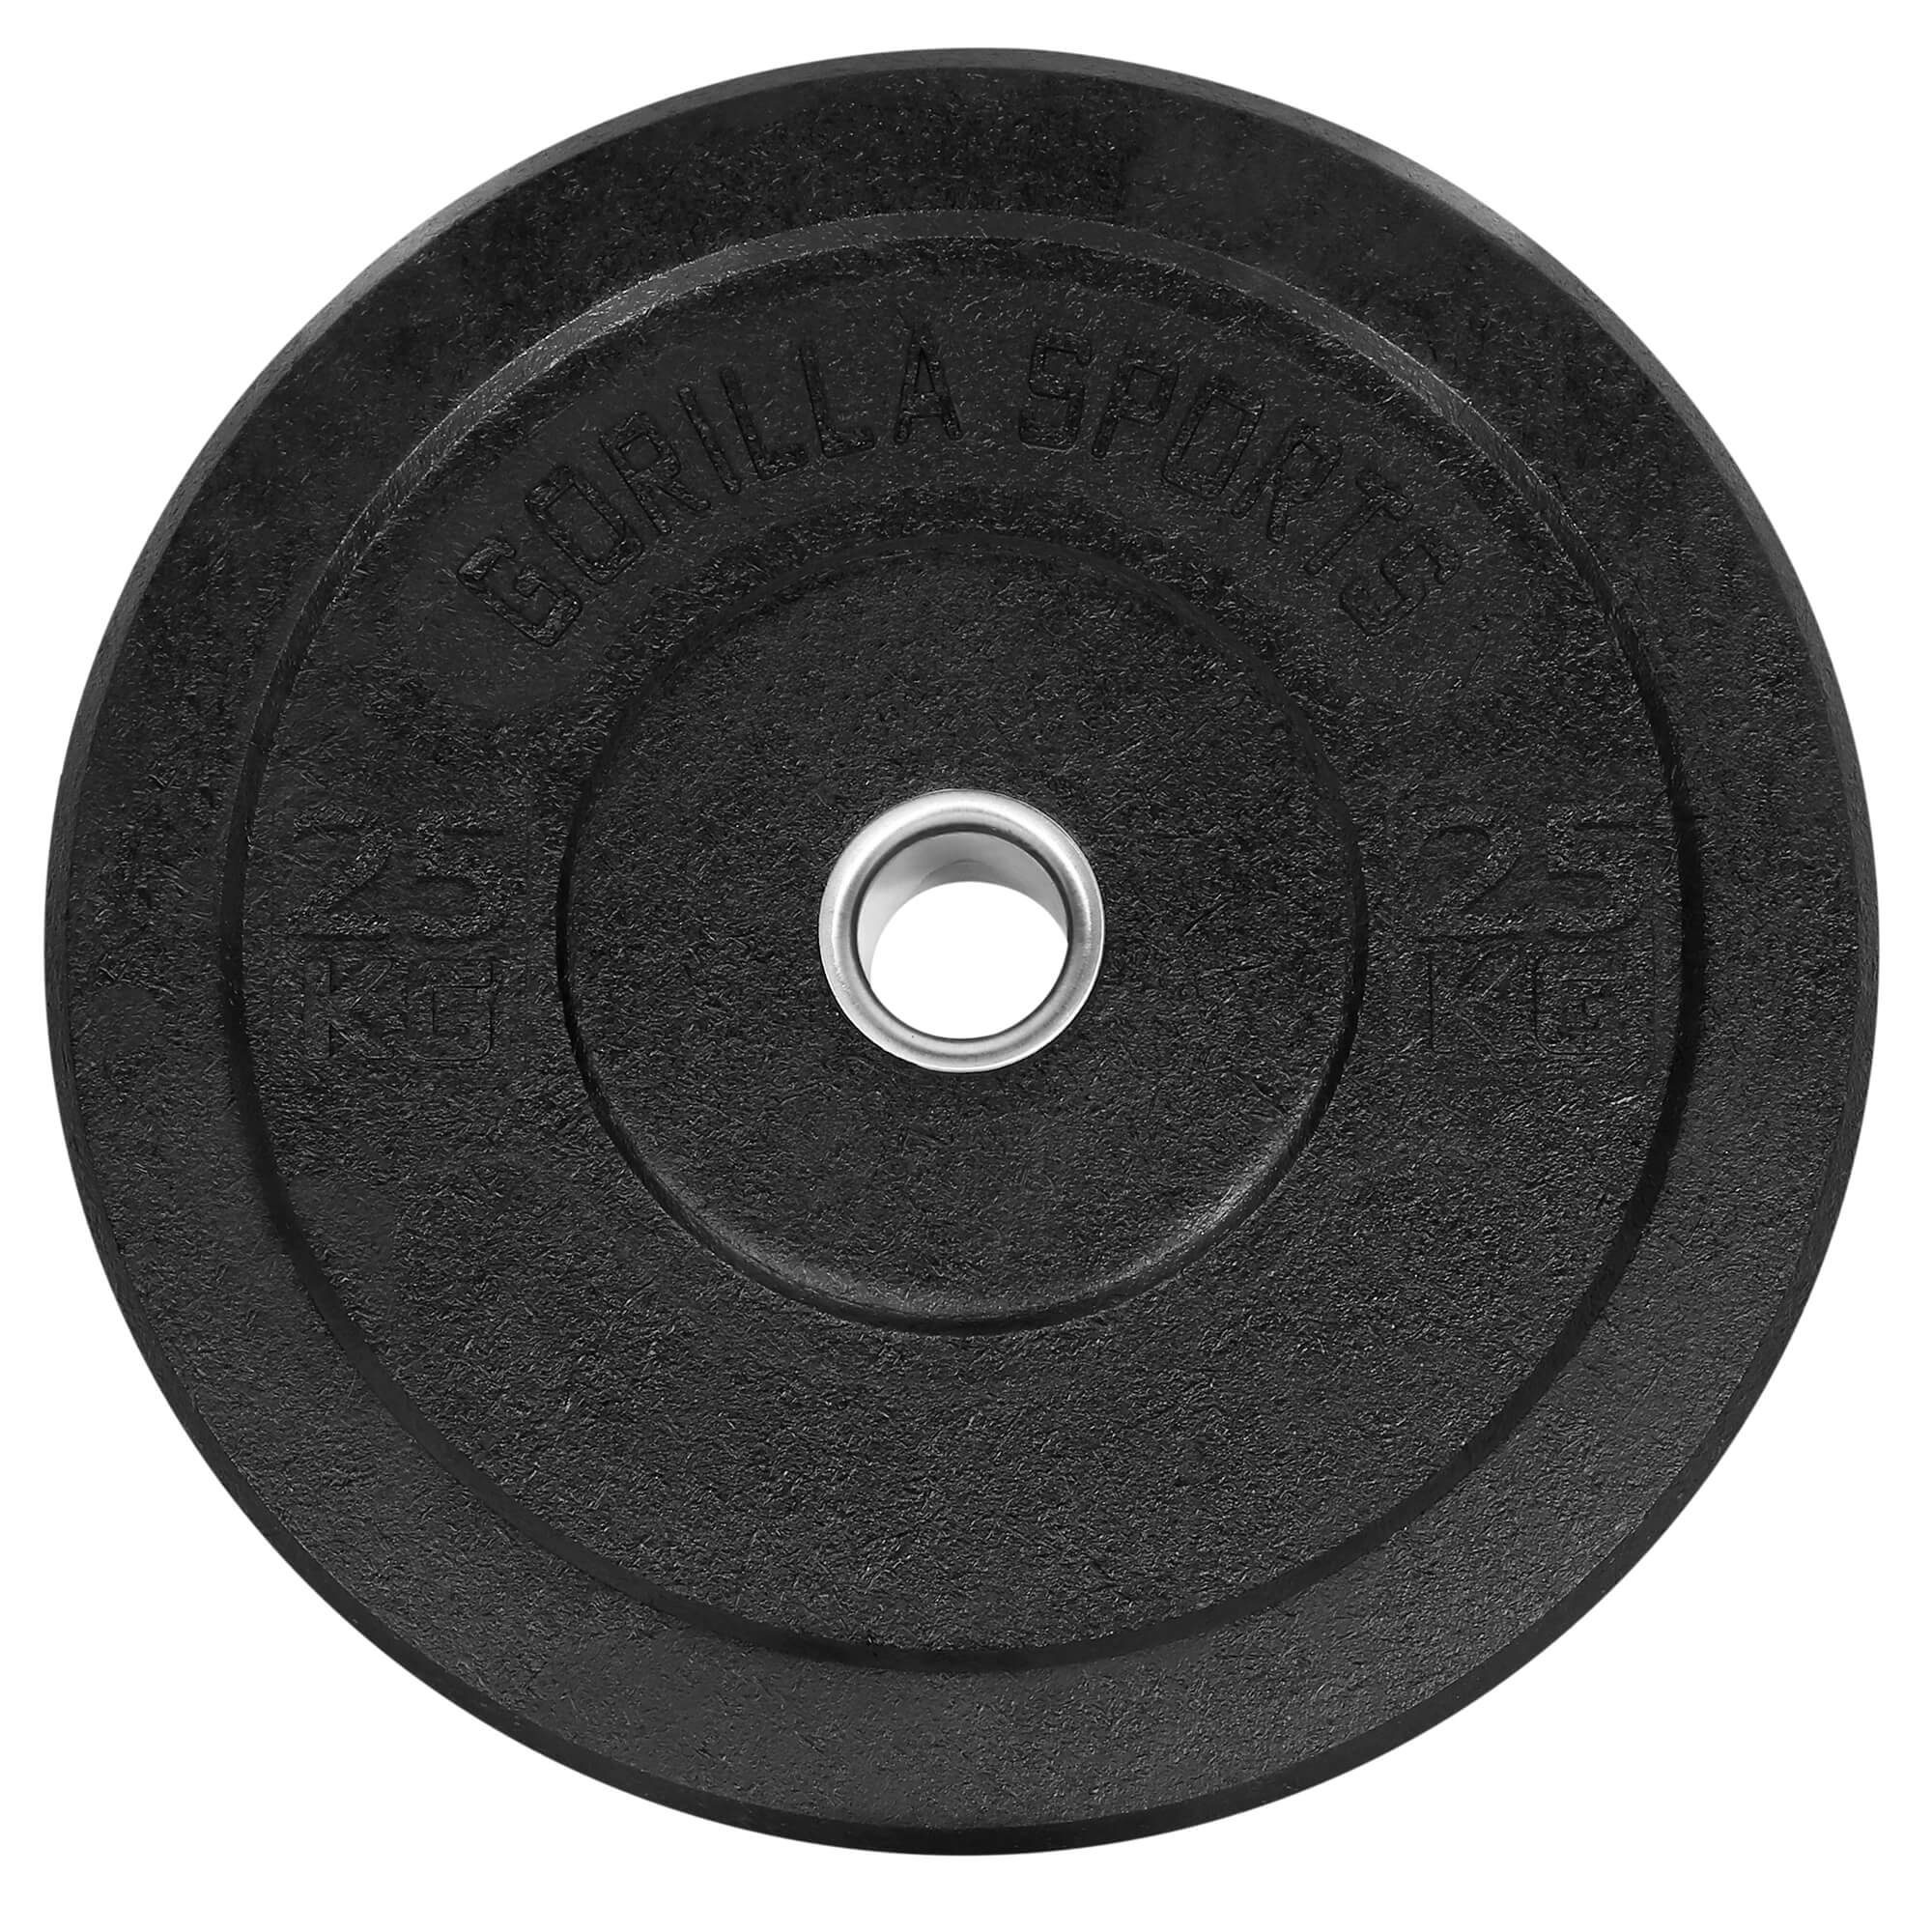 Olympia,5-50kg Plates,Gewichtsscheiben Gewichte,Einzeln/Set,Bumper Hantelscheiben Set SPORTS 2x25kg GORILLA